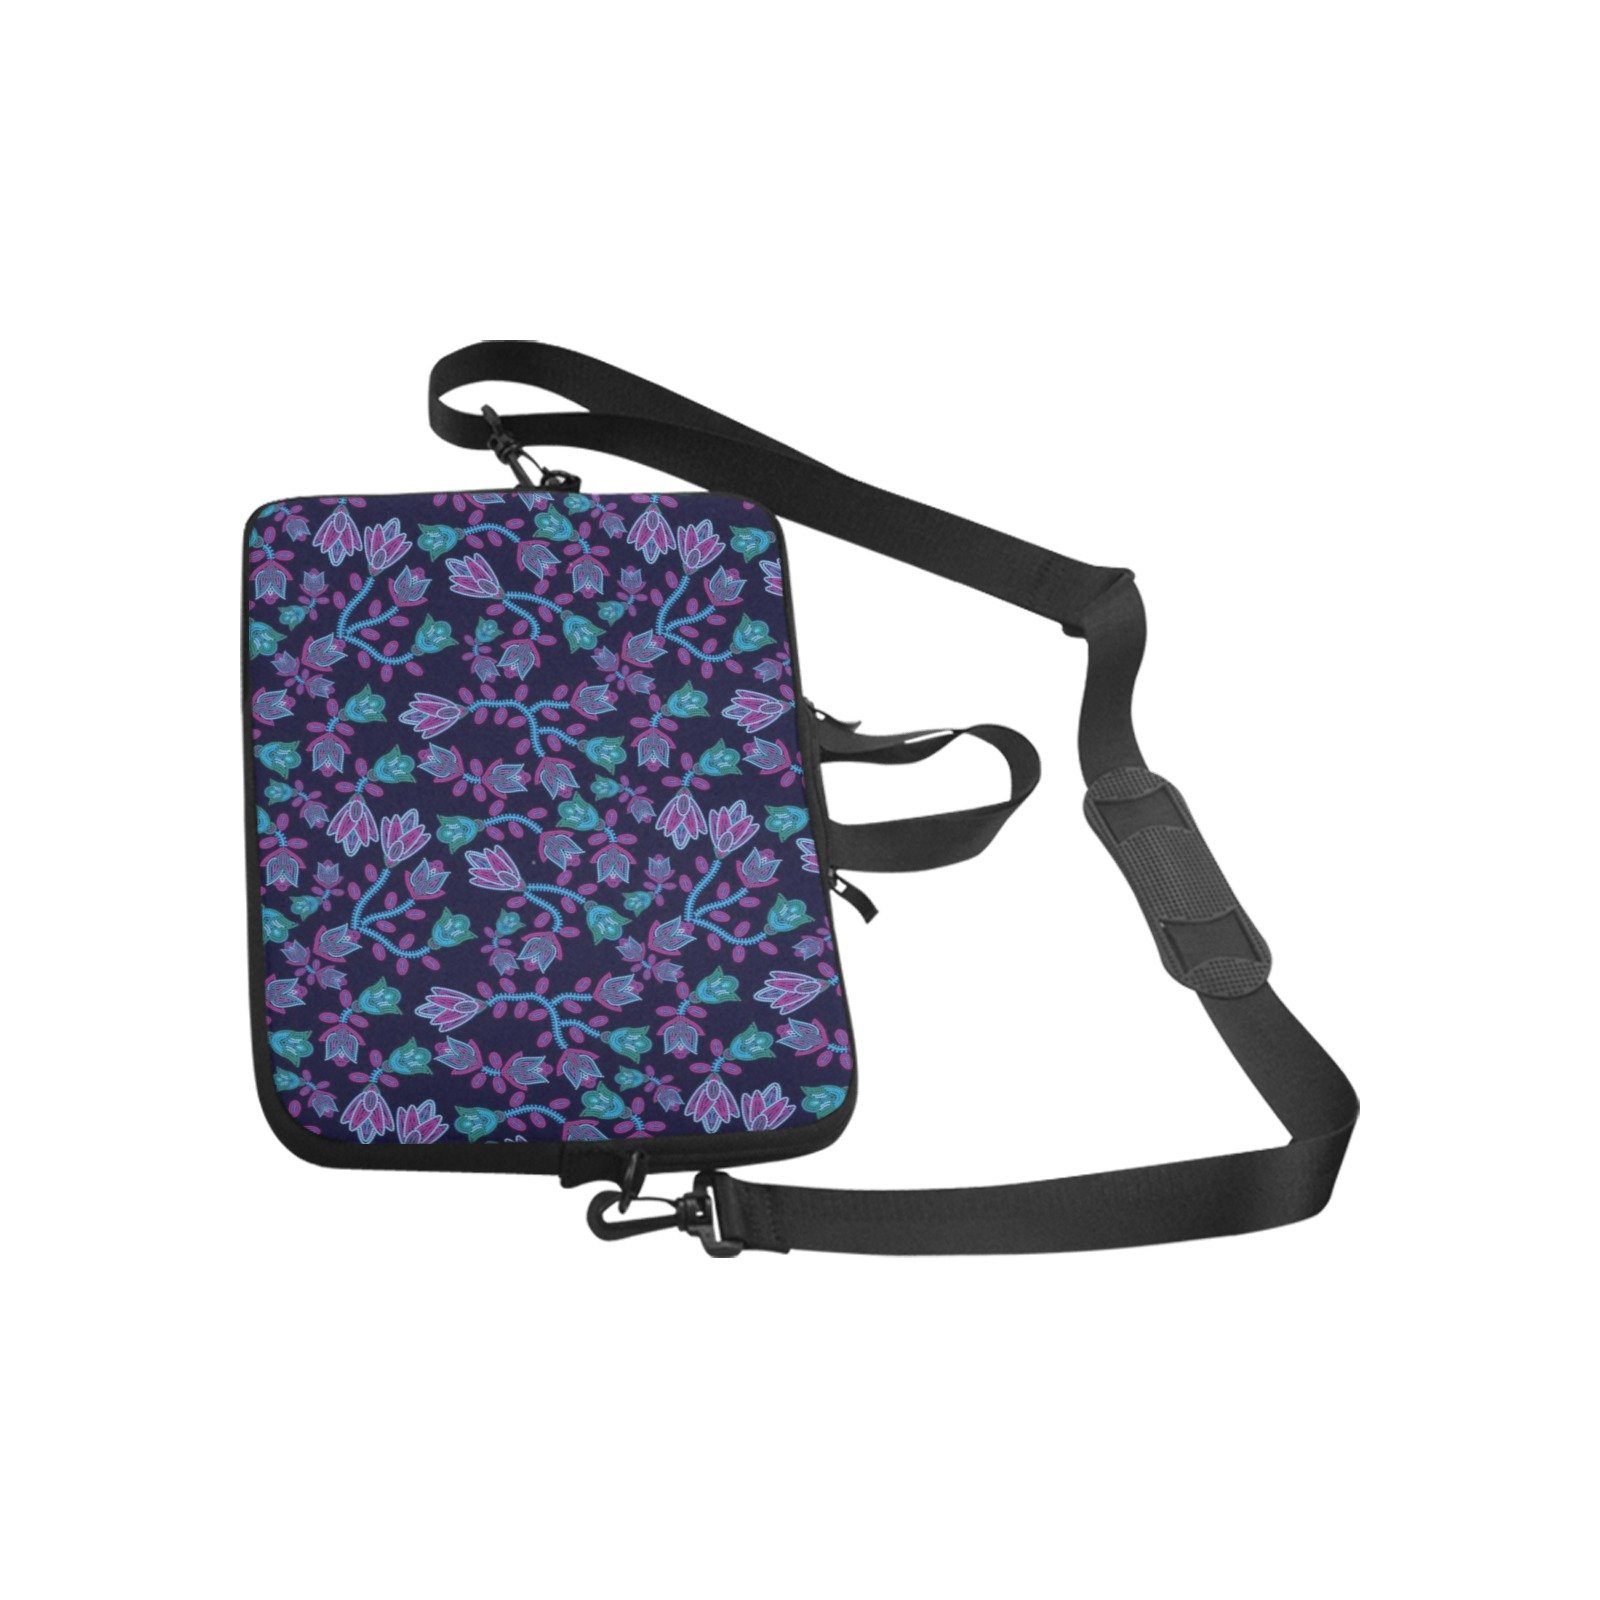 Beaded Blue Nouveau Laptop Handbags 17" bag e-joyer 